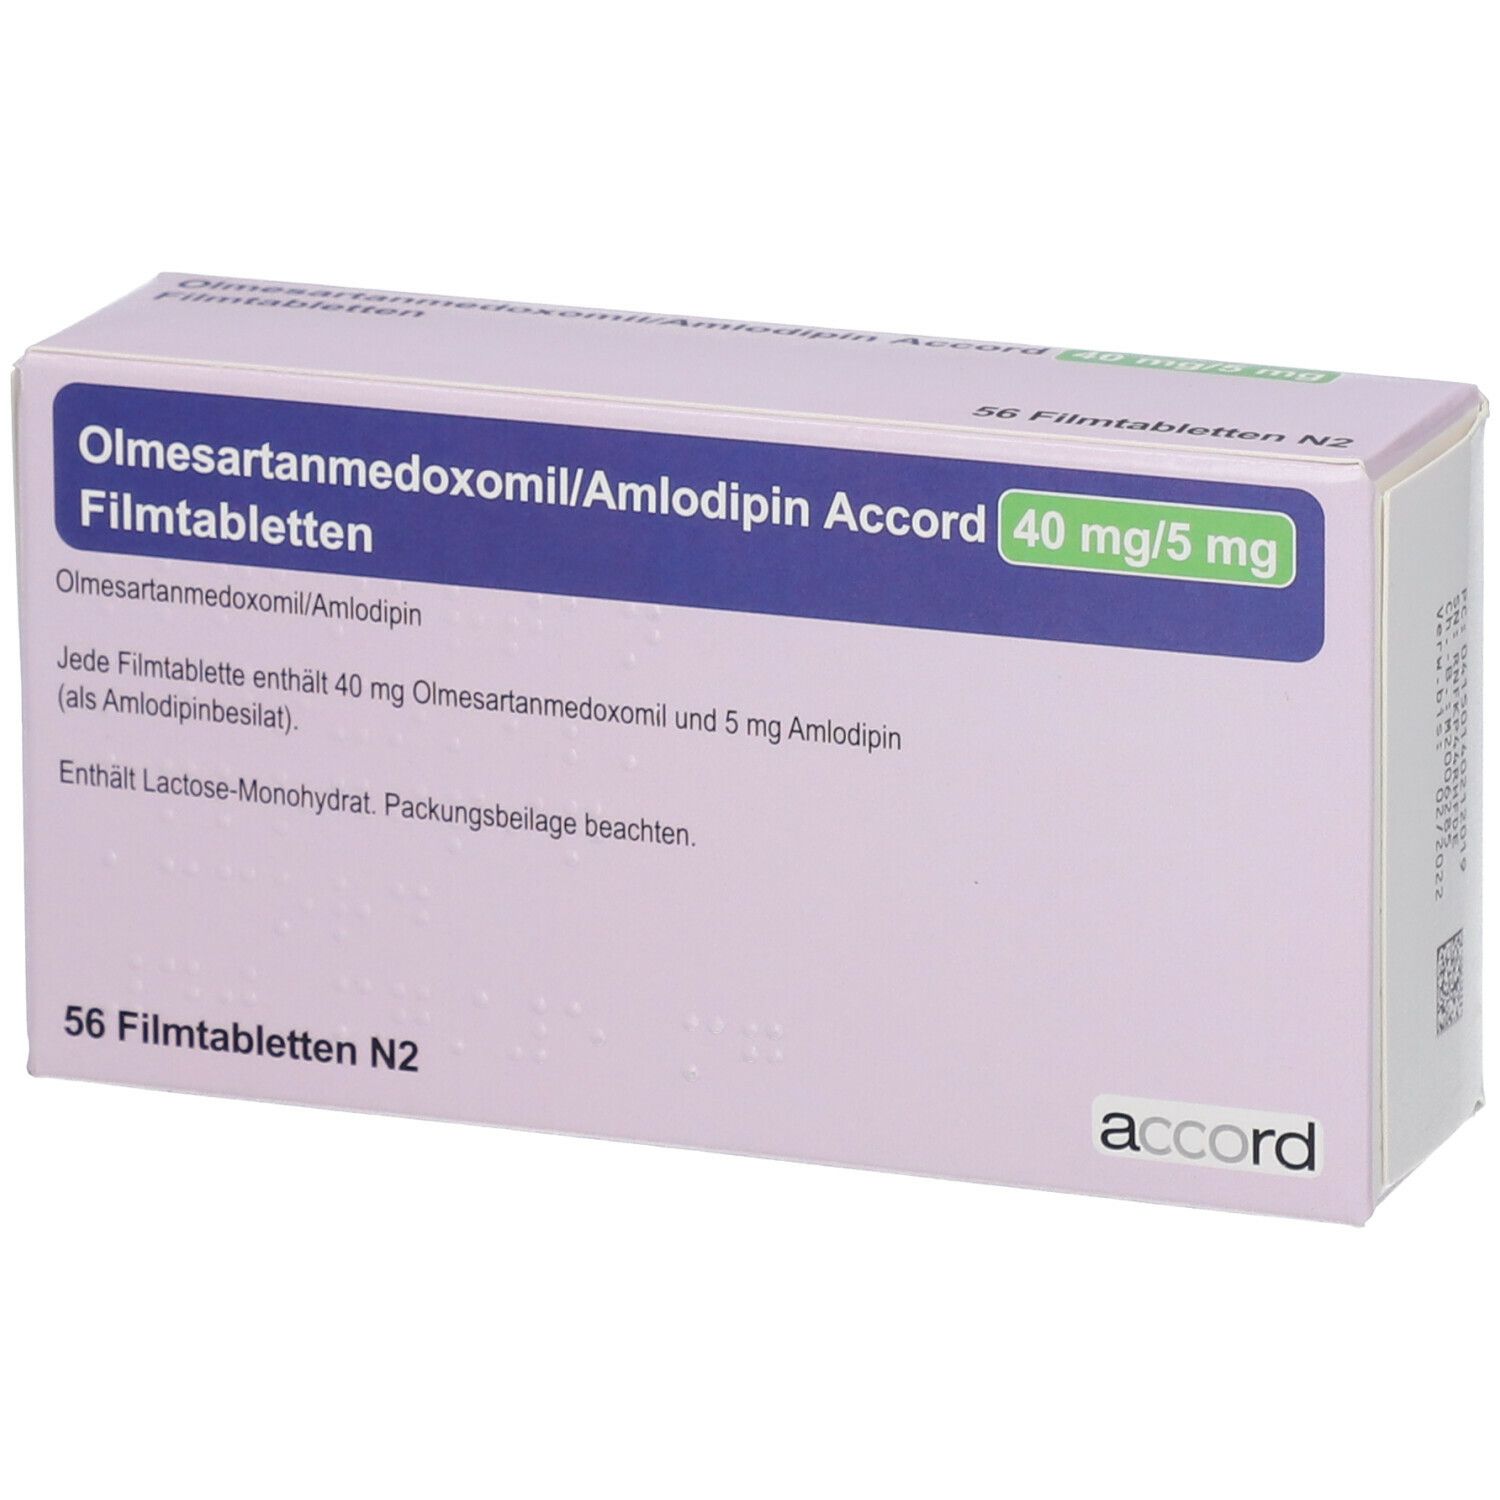 Olmesartanmedoxomil/Amlodipin Accord 40 mg/5 mg